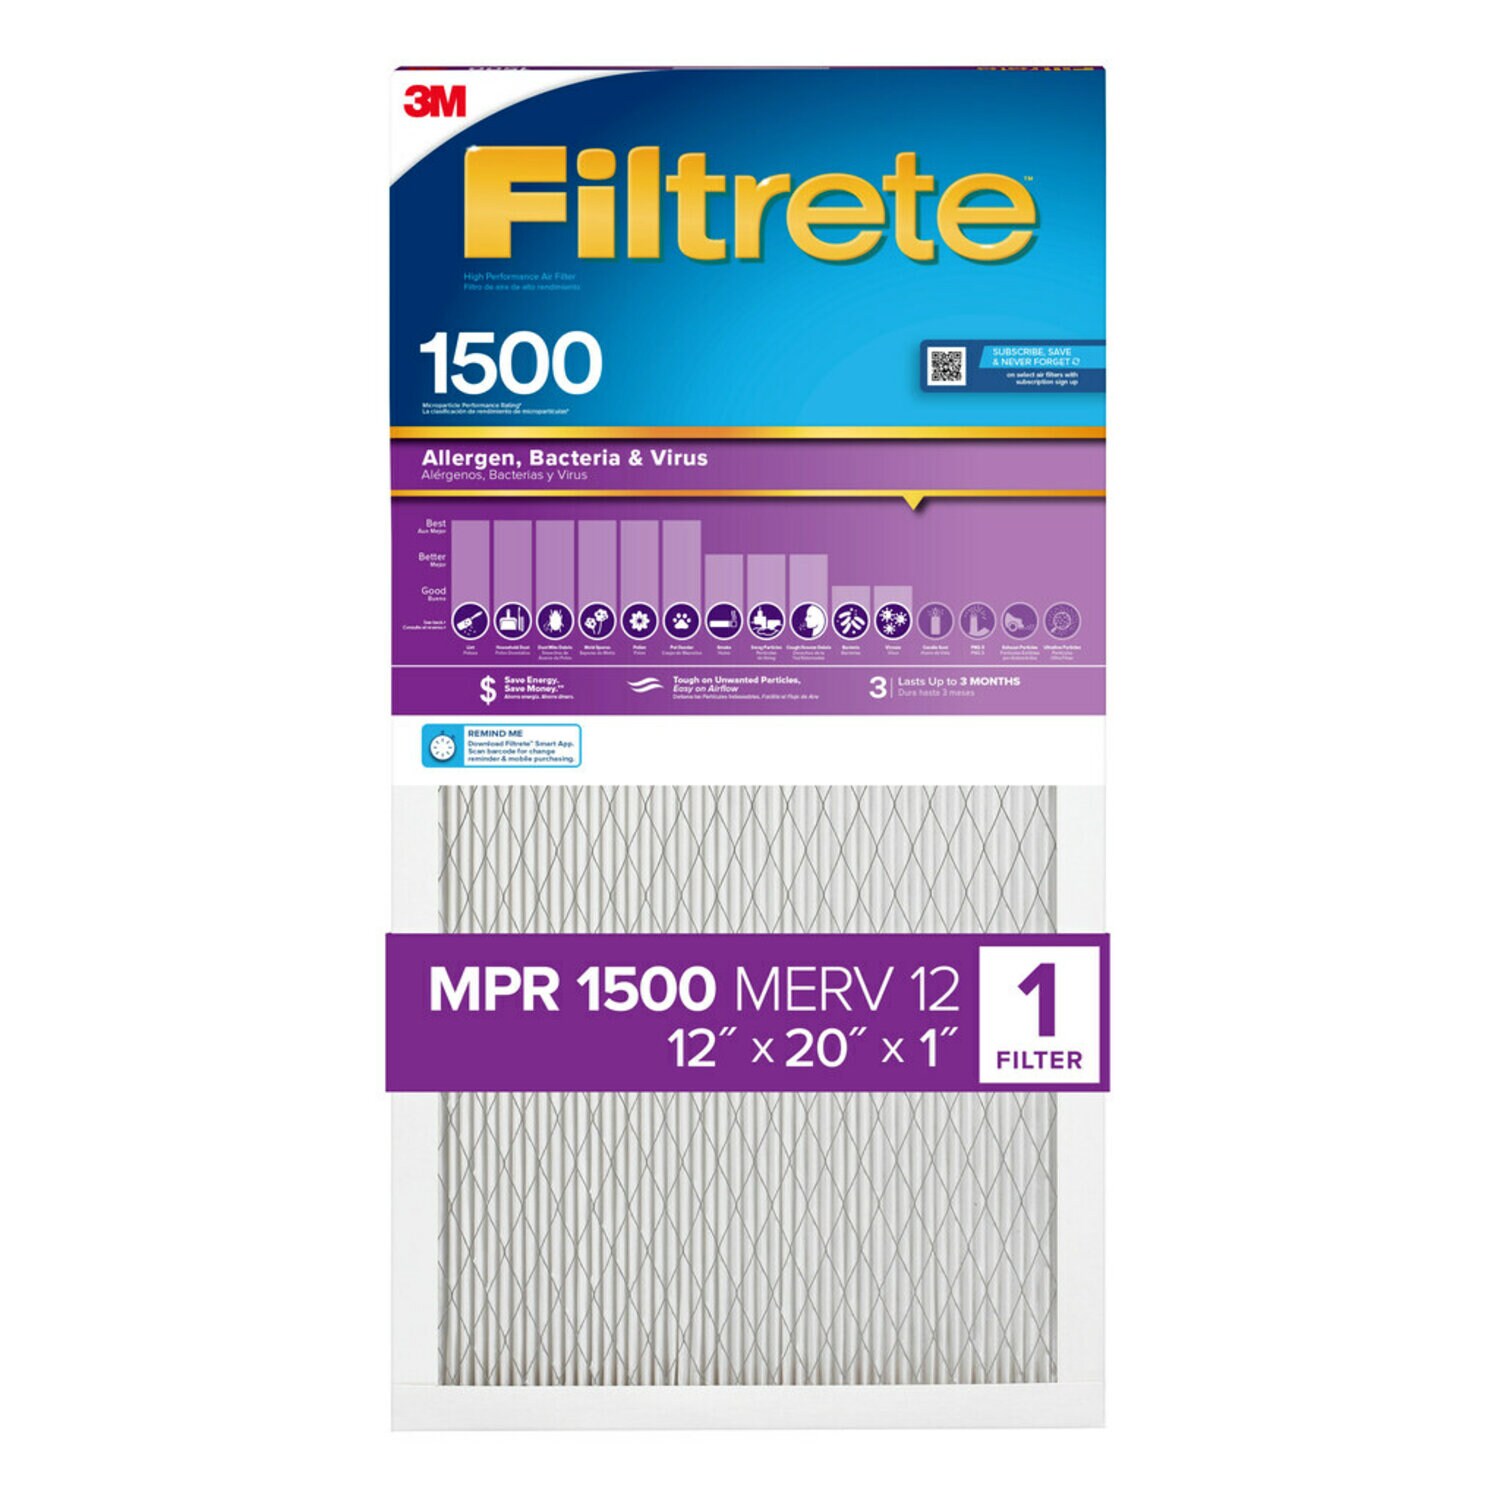 7100266624 - Filtrete High Performance Air Filter 1500 MPR 2019DC-4, 12 in x 20 in x 1 in (30.4 cm x 50.8 cm x 2.5 cm)